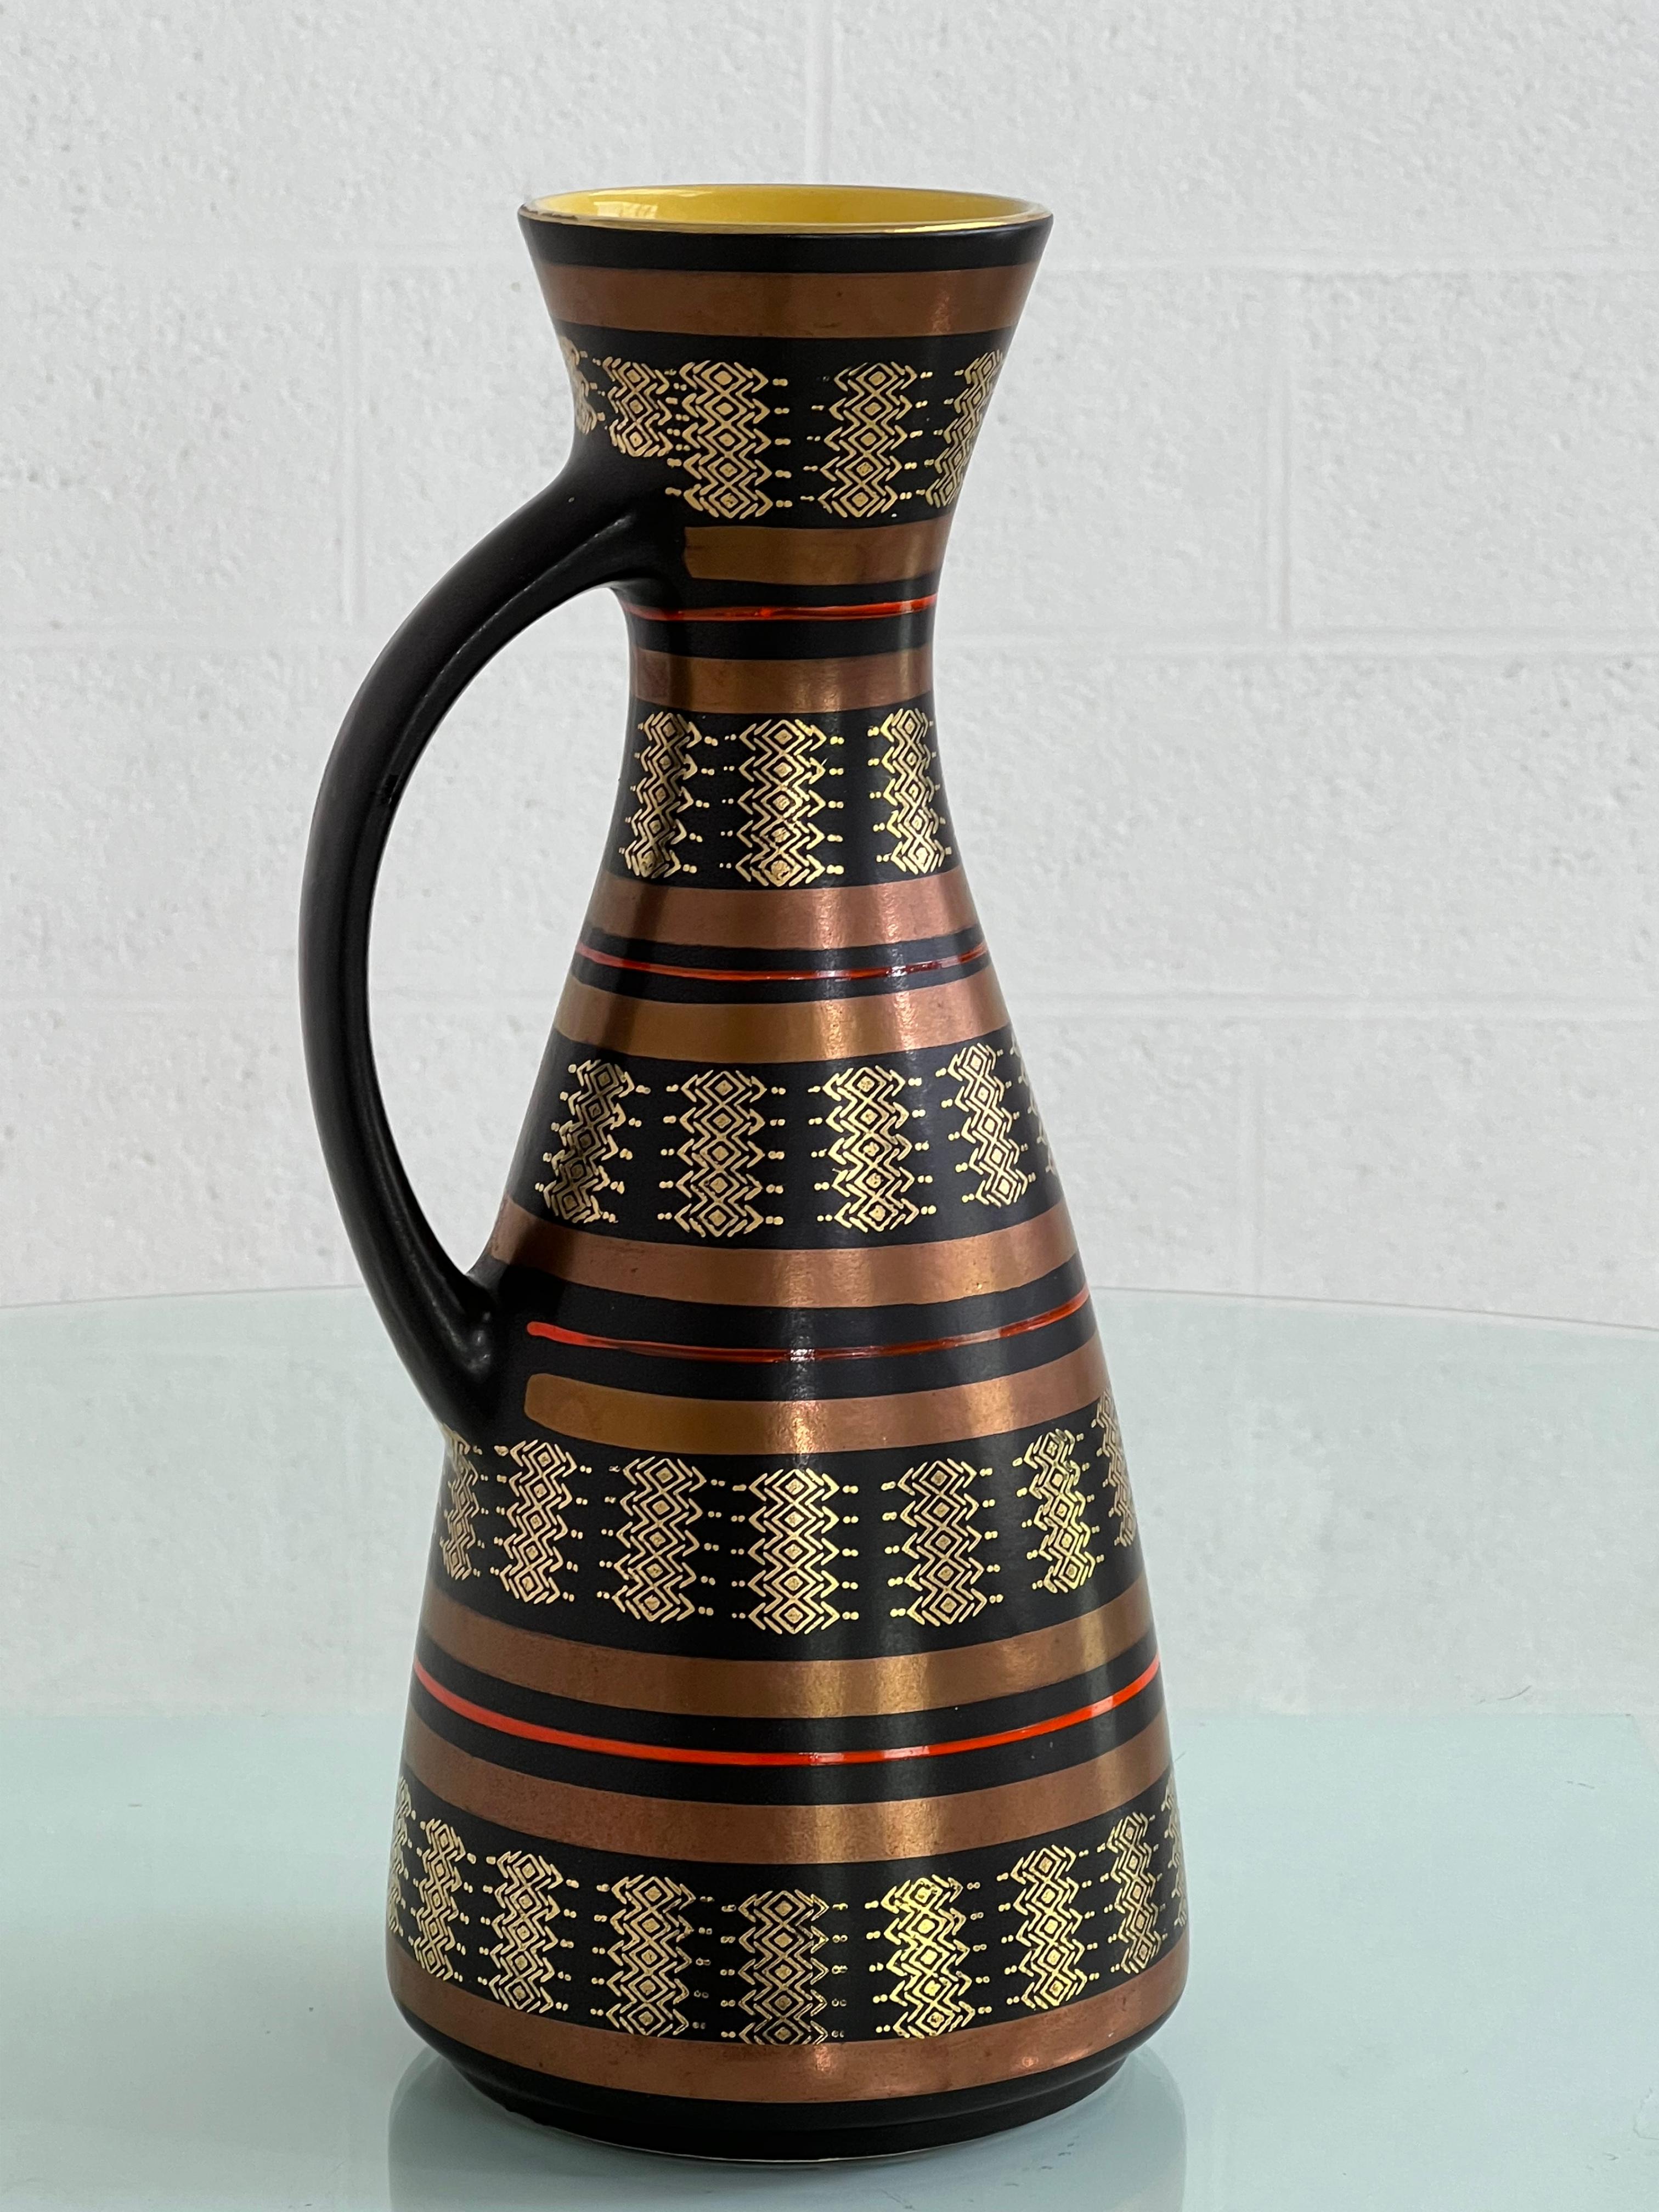 Vase pichet en céramique fait à la main dans les années 1960 en Allemagne de l'Ouest avec des couleurs noires, rouges, cuivre et or à l'extérieur et une glaçure jaune étonnante à l'intérieur.